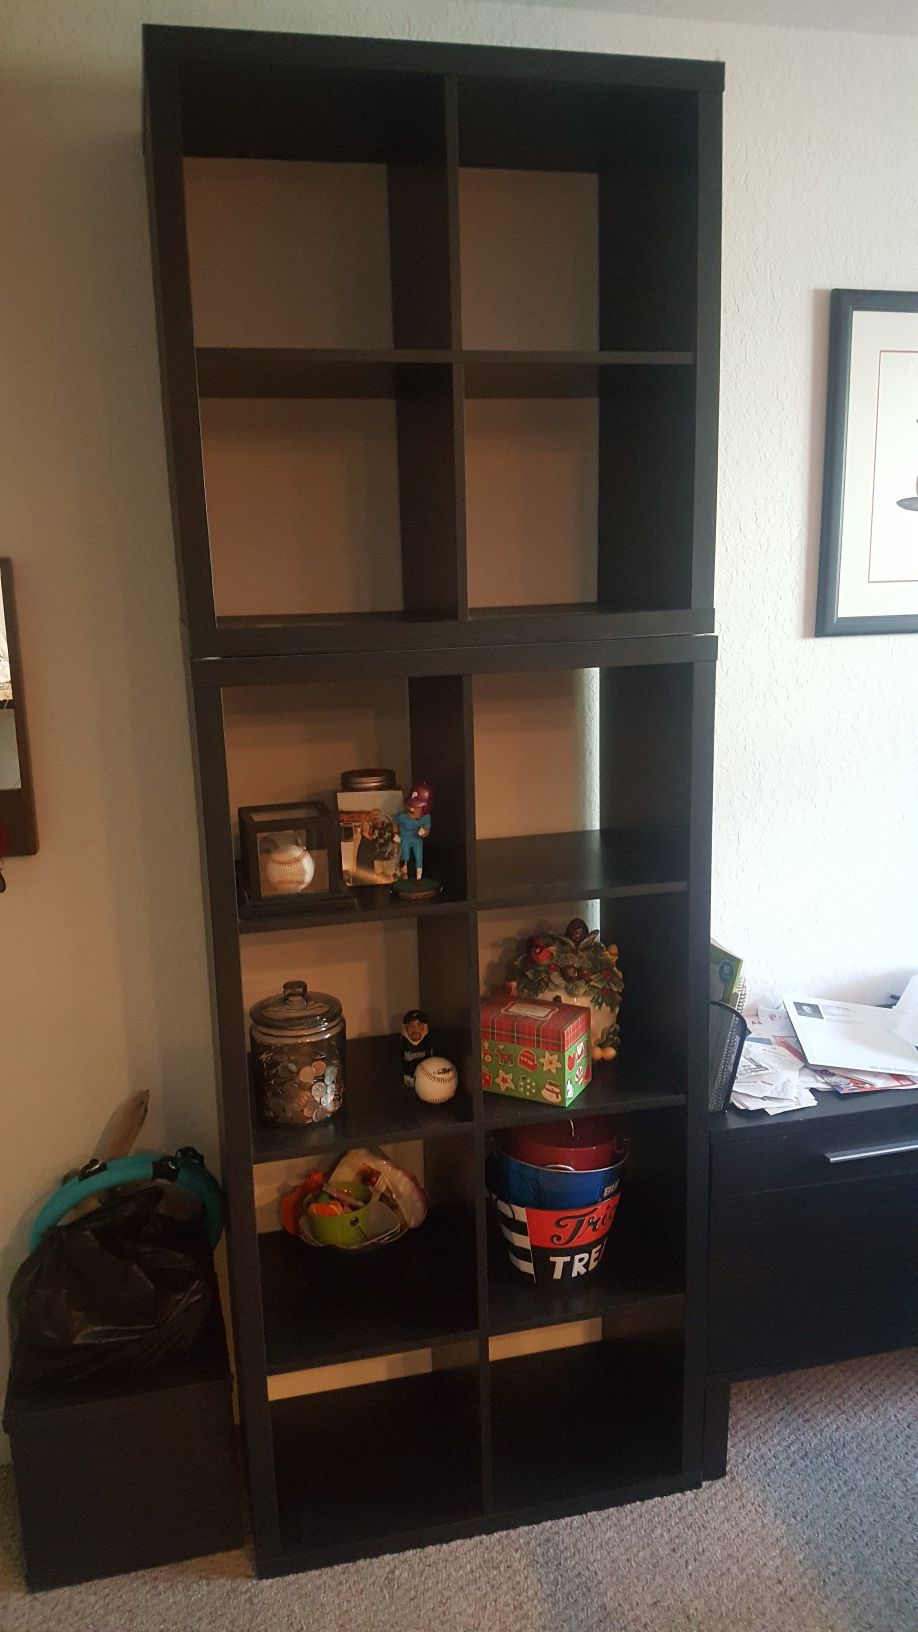 Bookshelves from Ikea